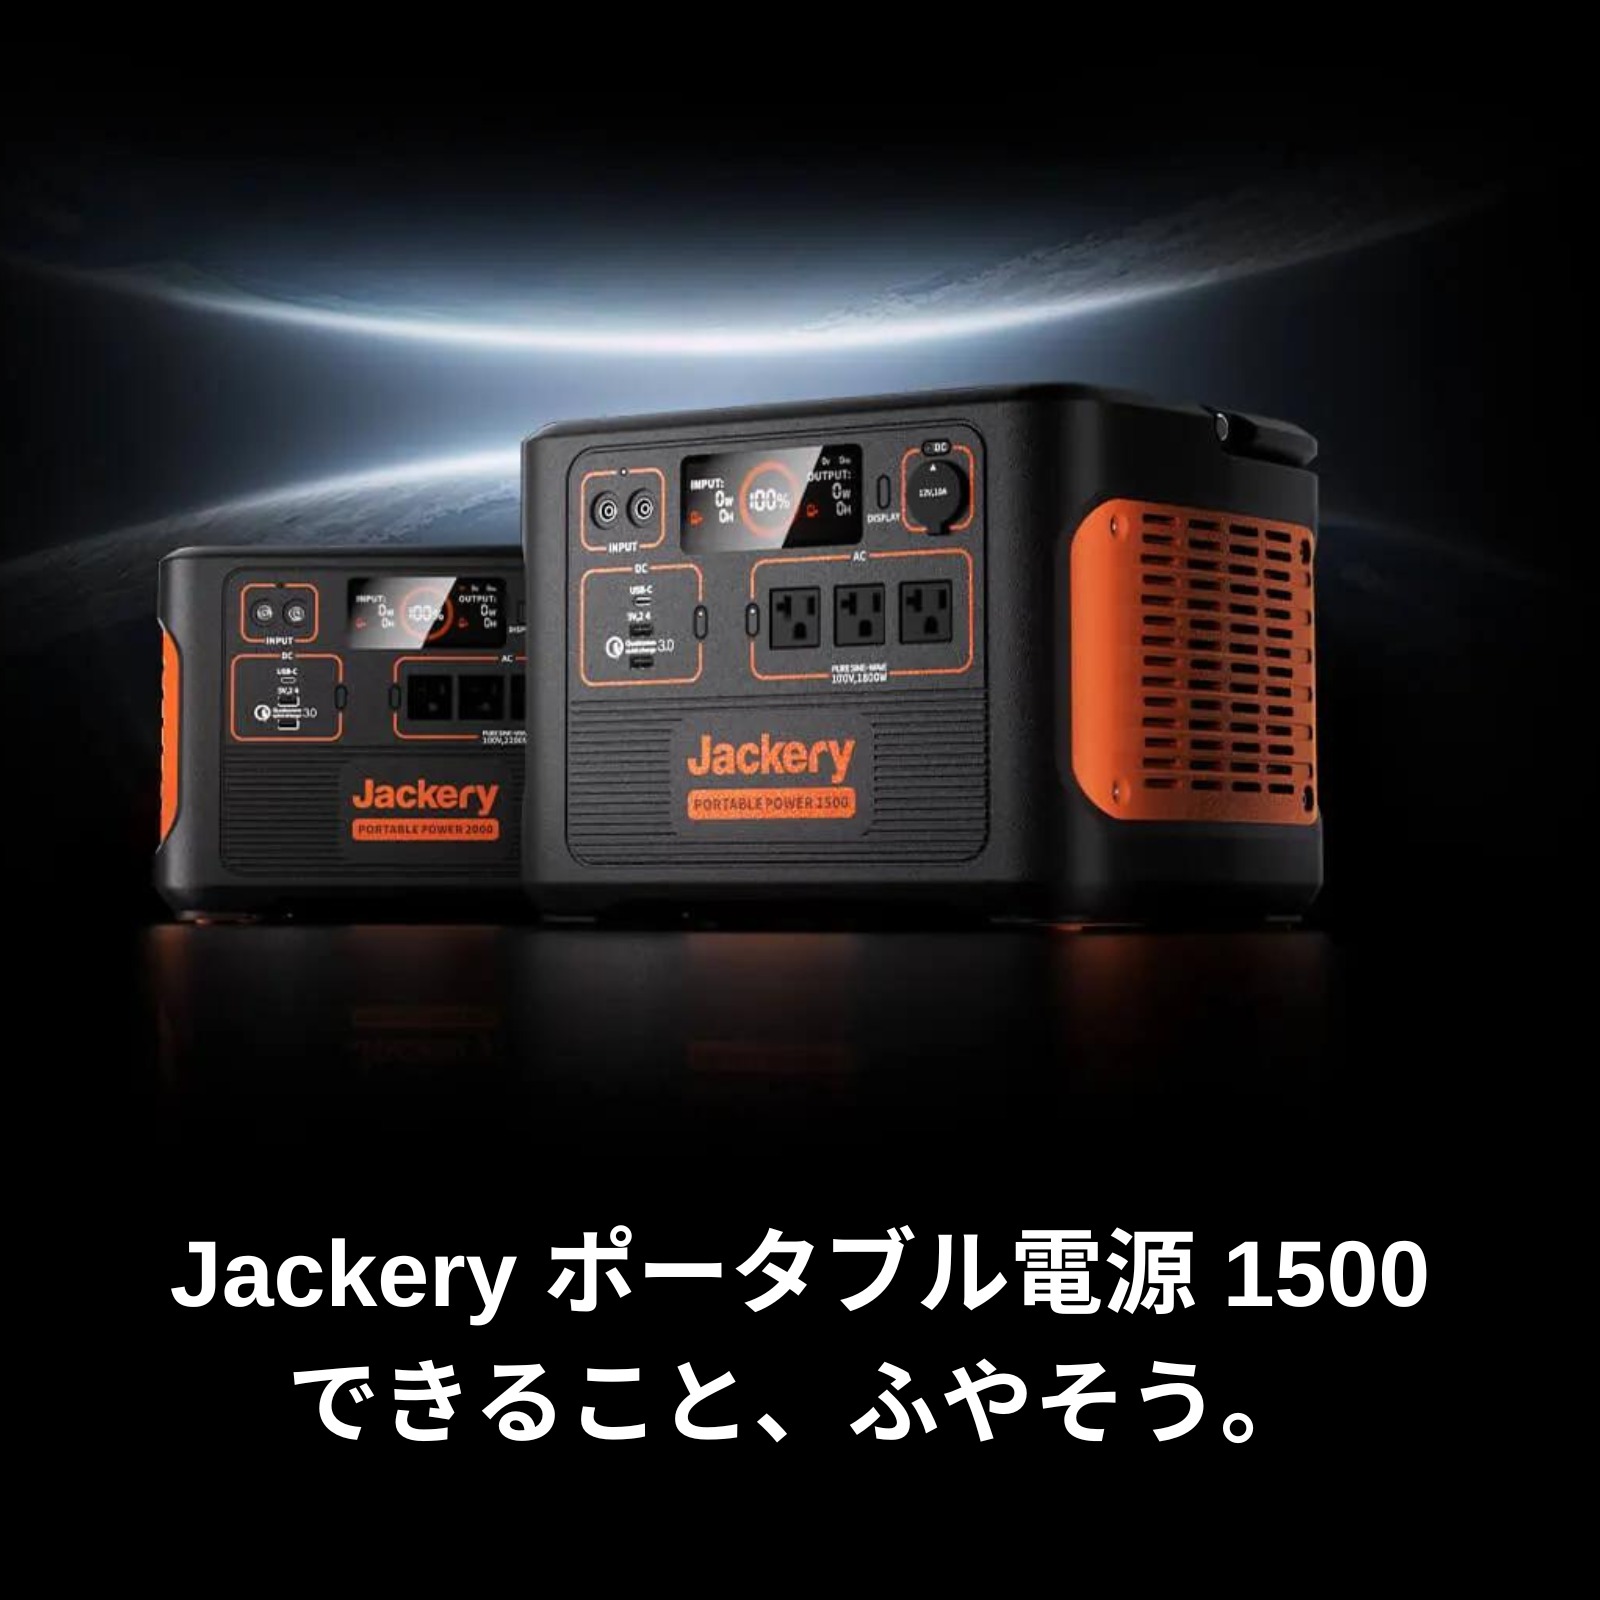 Jackery ジャクリ ポータブル電源 1500 PTB152 大容量 バッテリー 